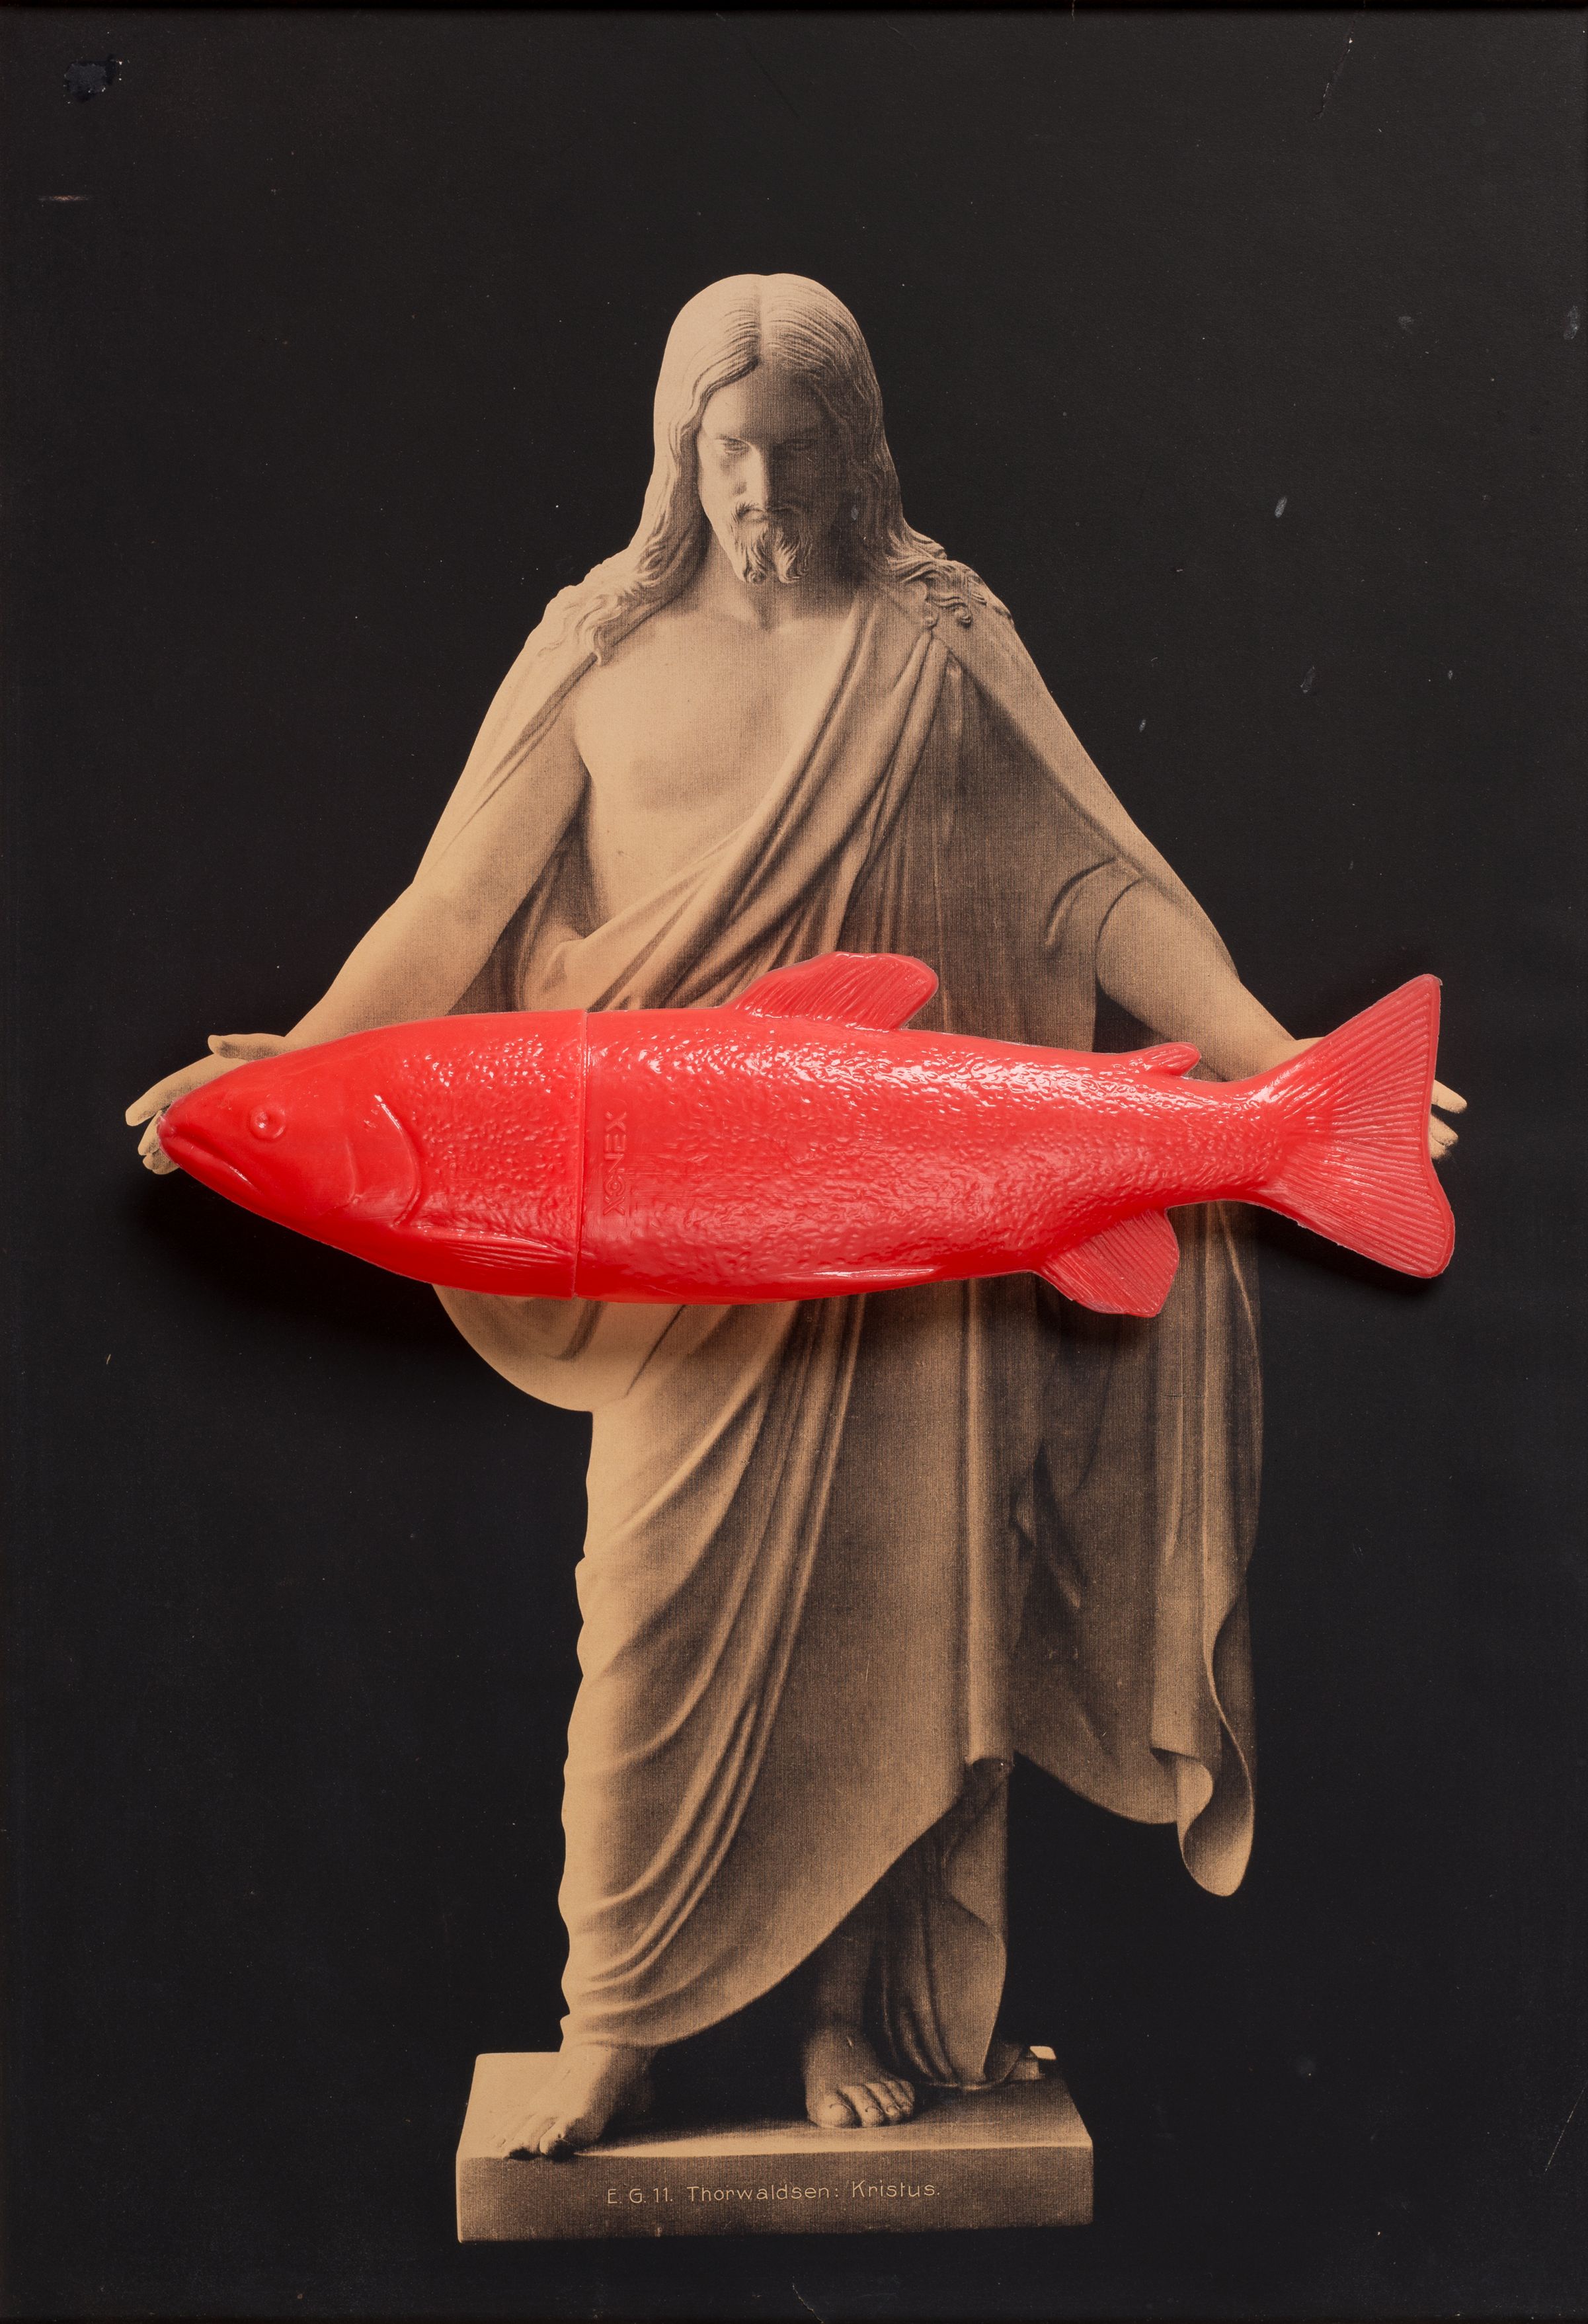 Fotografi av en skulptur med en rød fisk